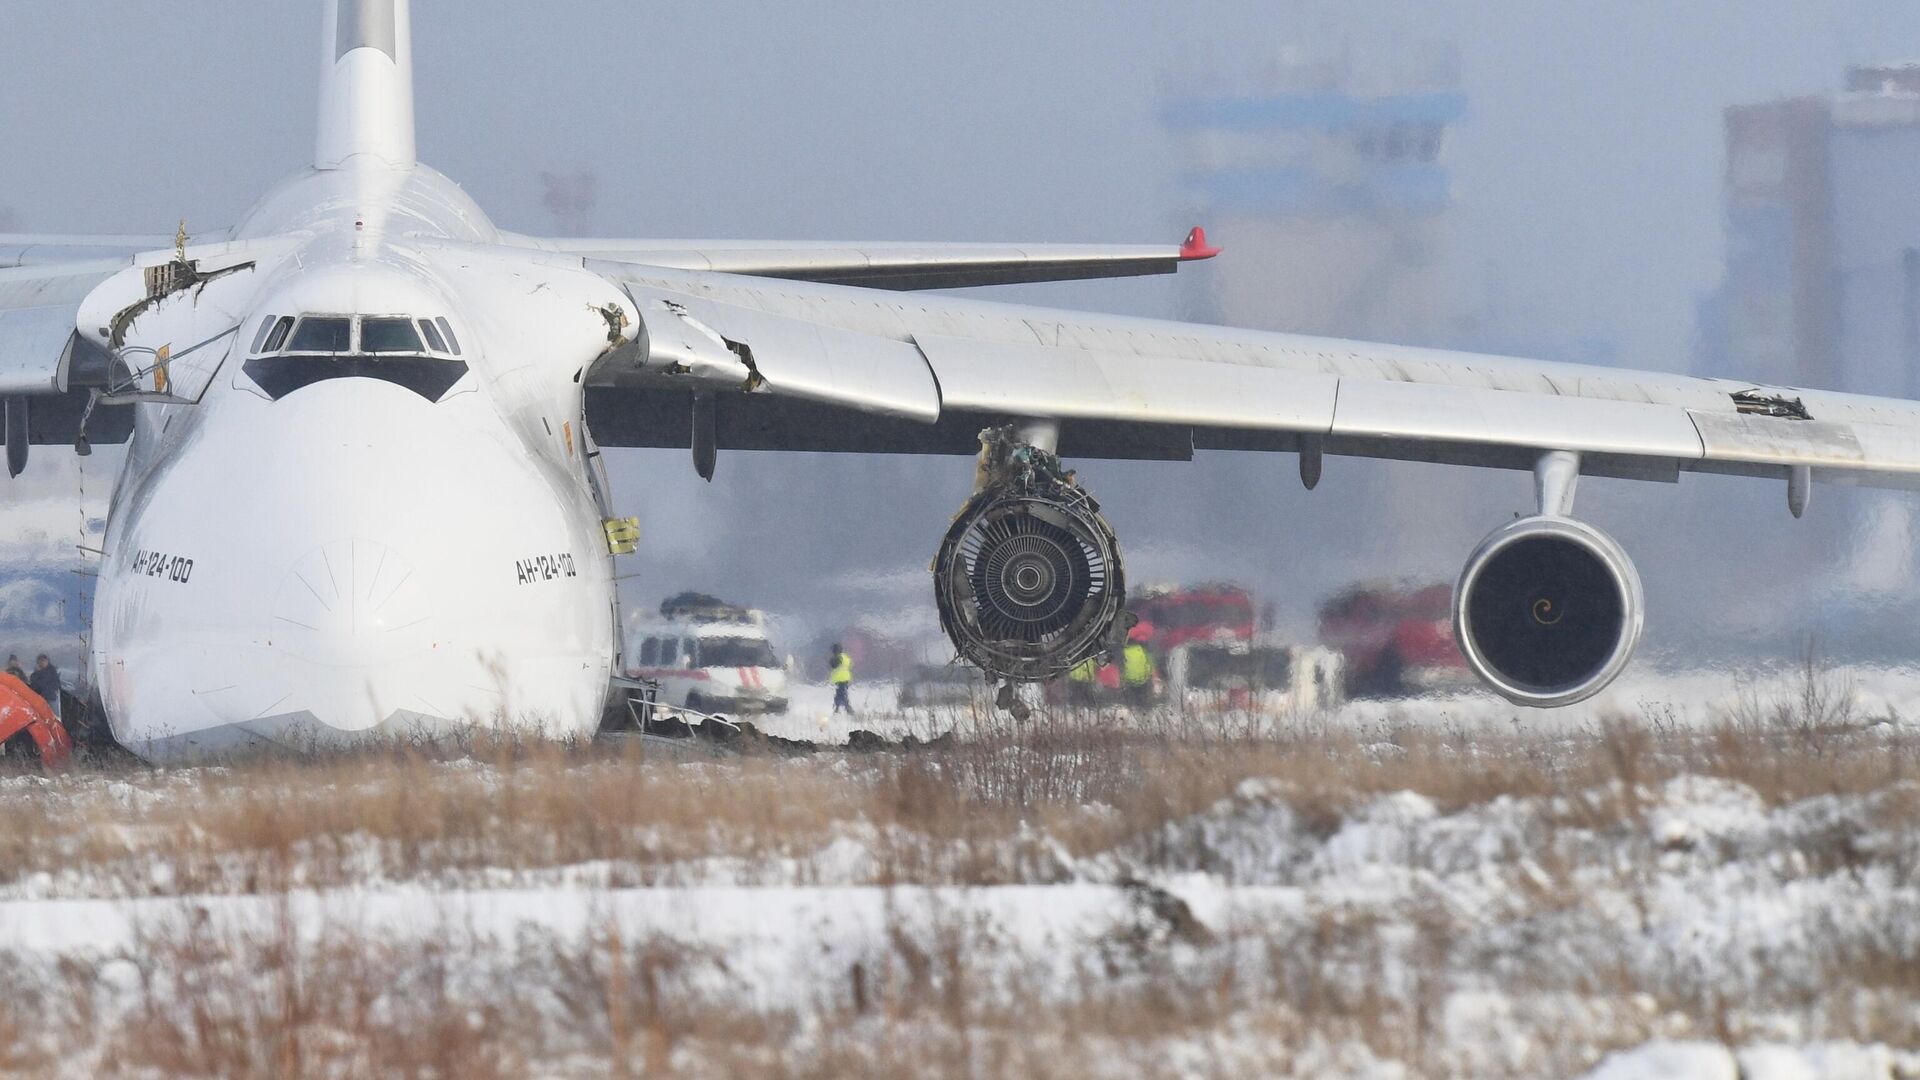 Самолет Ан-124 авиакомпании Волга-Днепр произвел вынужденную посадку из-за проблем с двигателем в новосибирском международном аэропорту Толмачево - РИА Новости, 1920, 13.11.2020